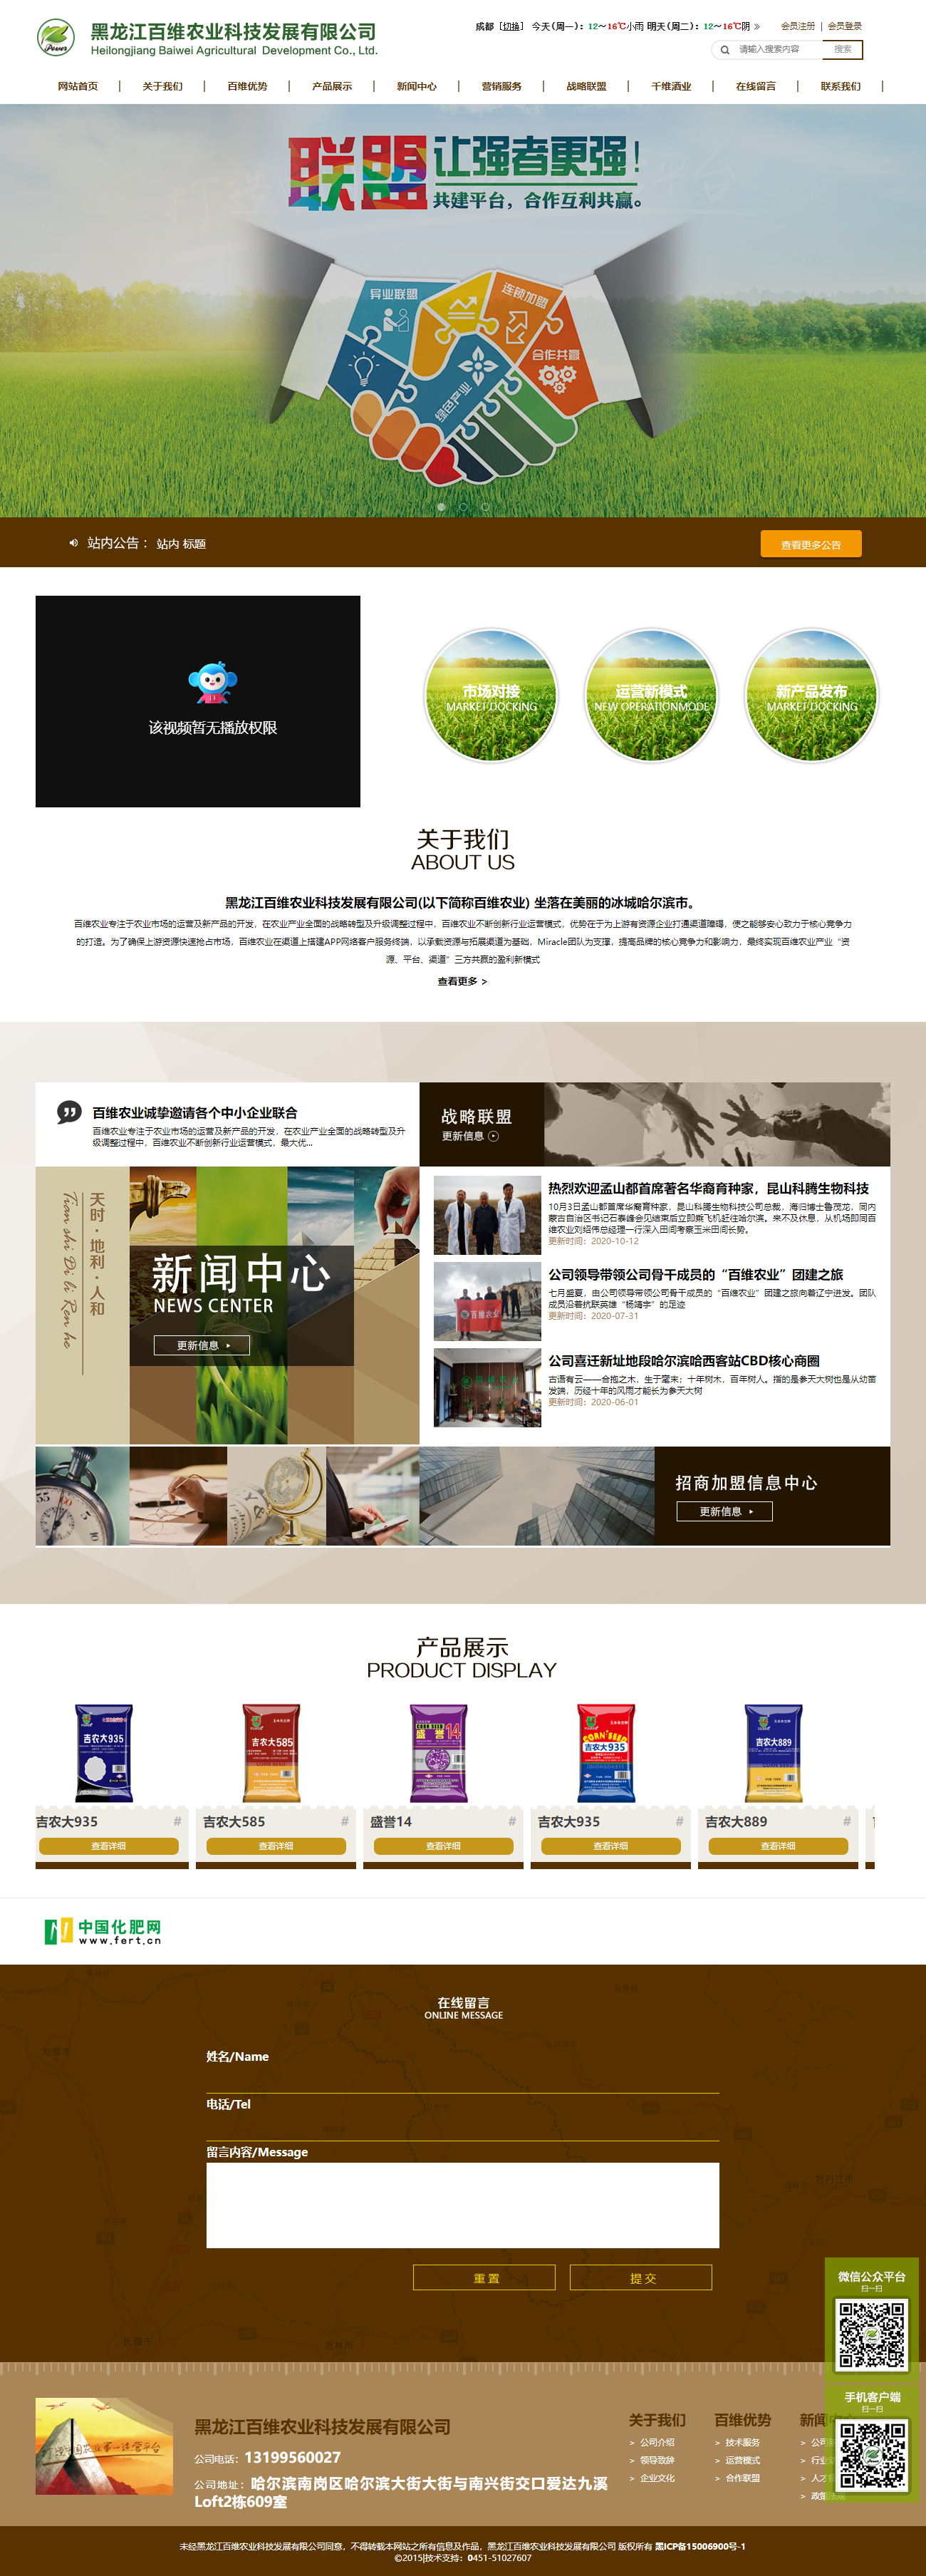 黑龙江百维农业科技发展有限公司网站案例